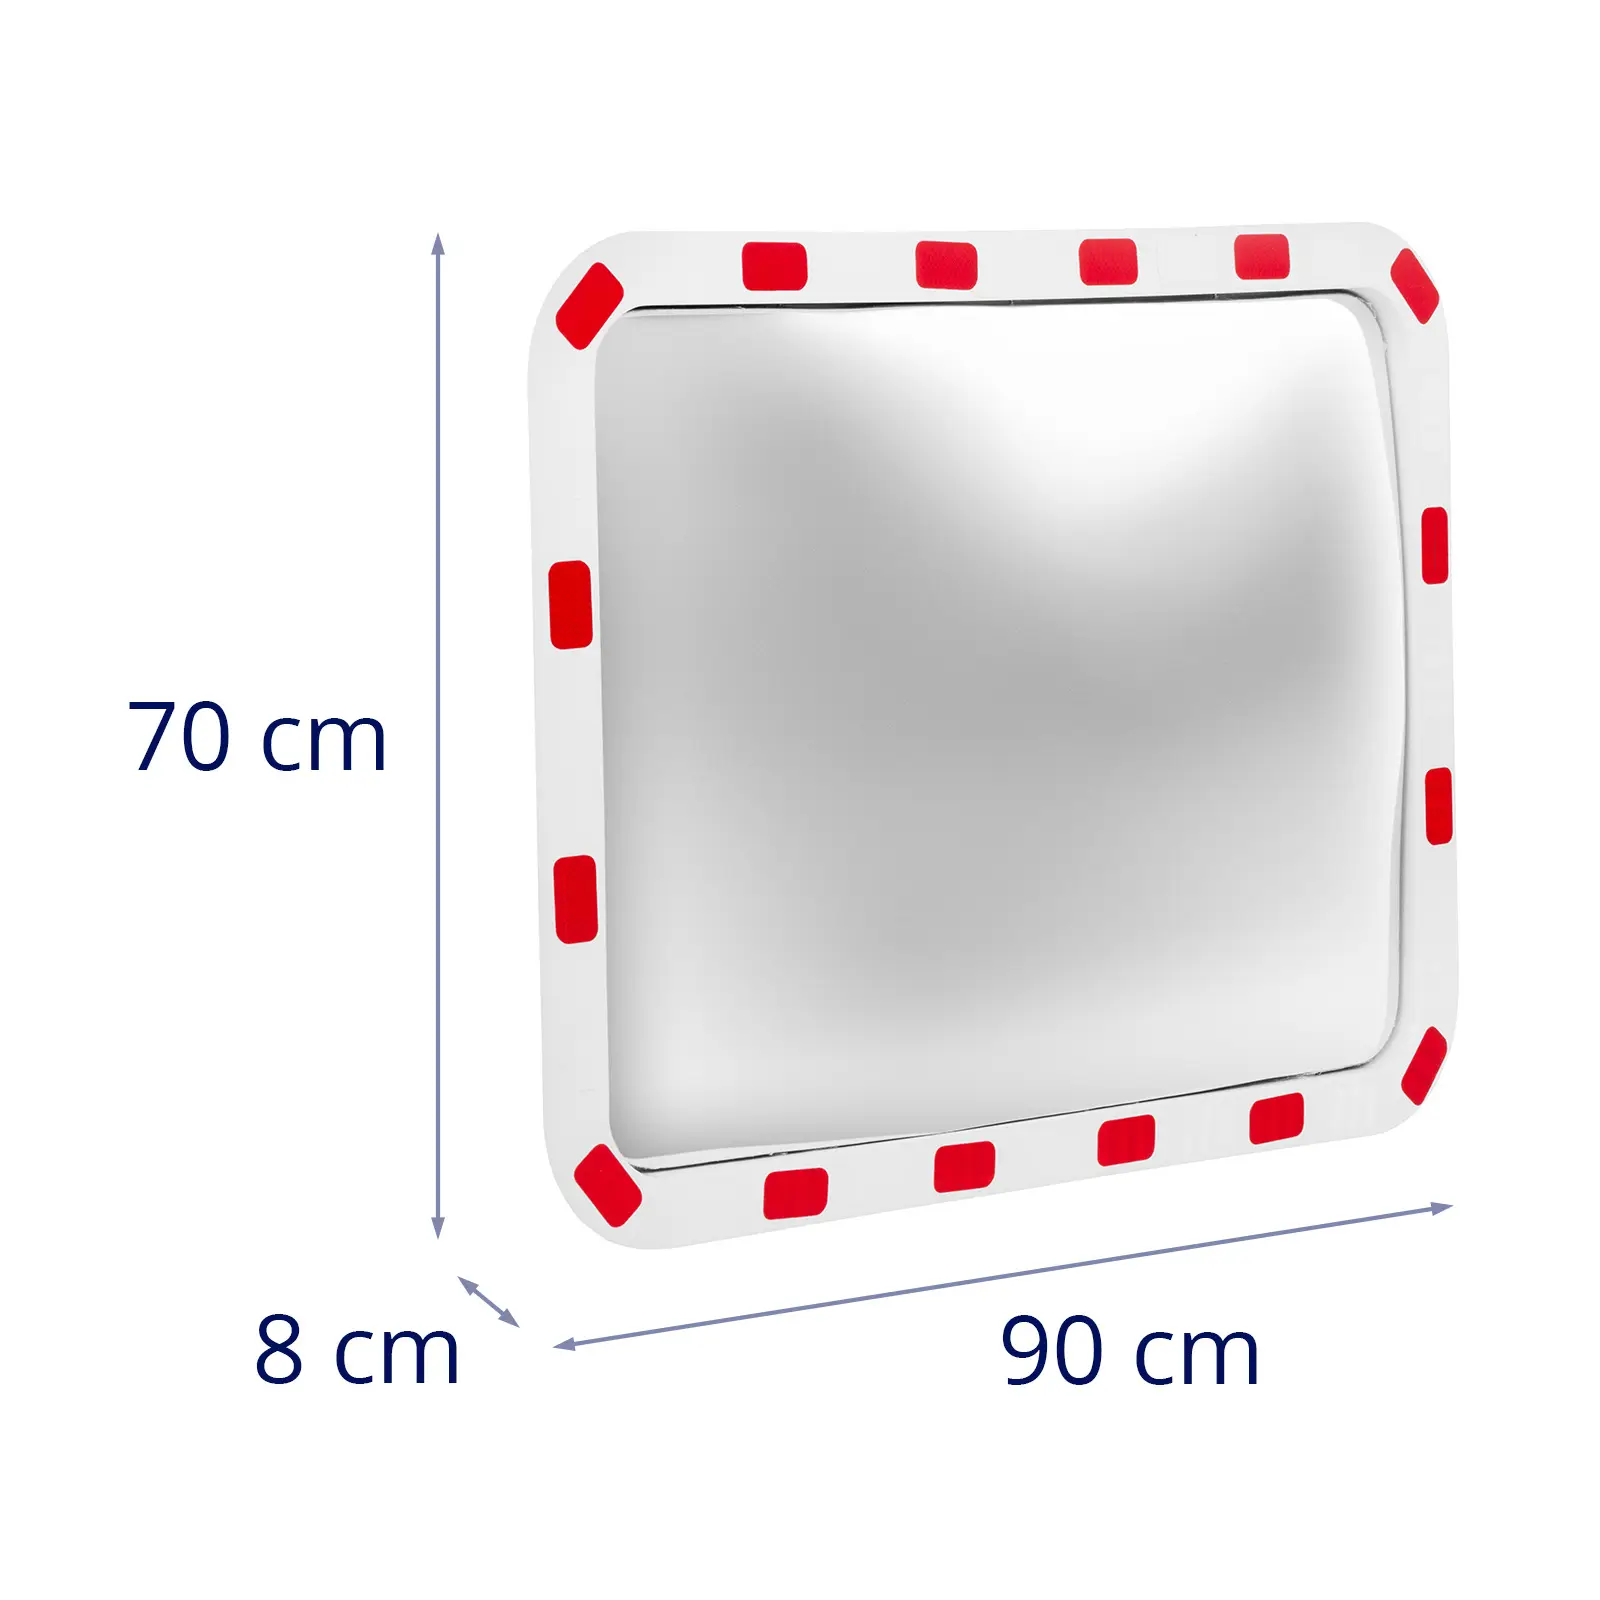 Espelho de segurança - 60 x 80 x 8 cm - 130° - retangular